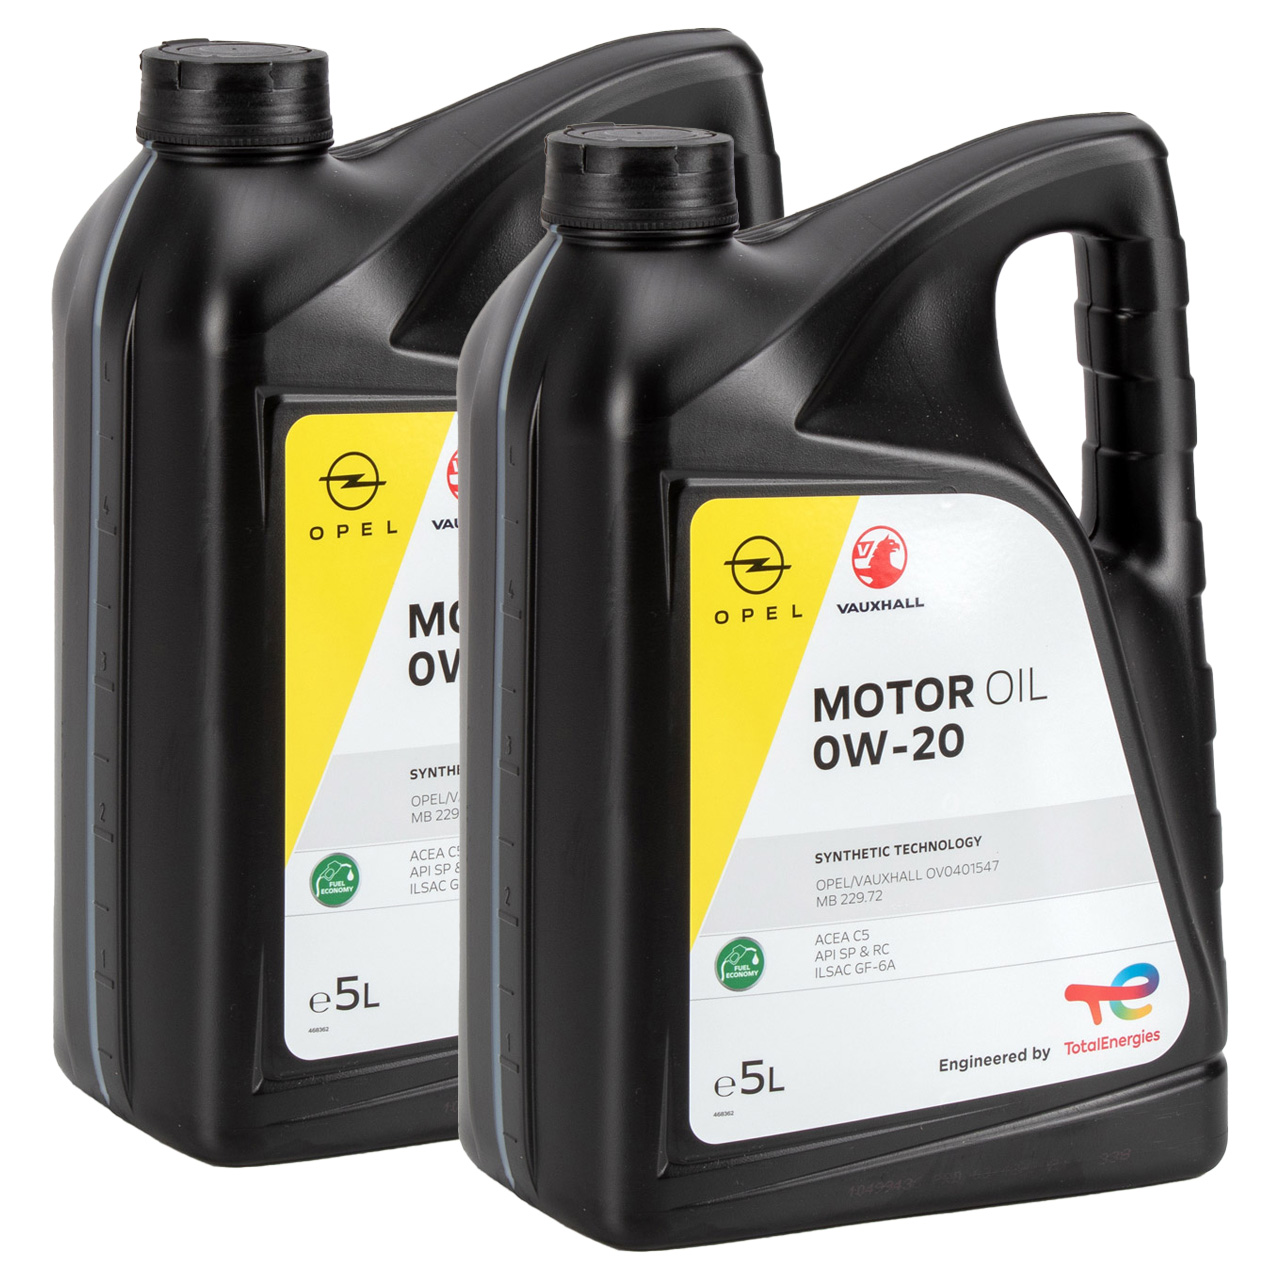 10L ORIGINAL Opel Motoröl 0W20 Fuel Economy Longlife ACEA C5 API SN+ OV0401547